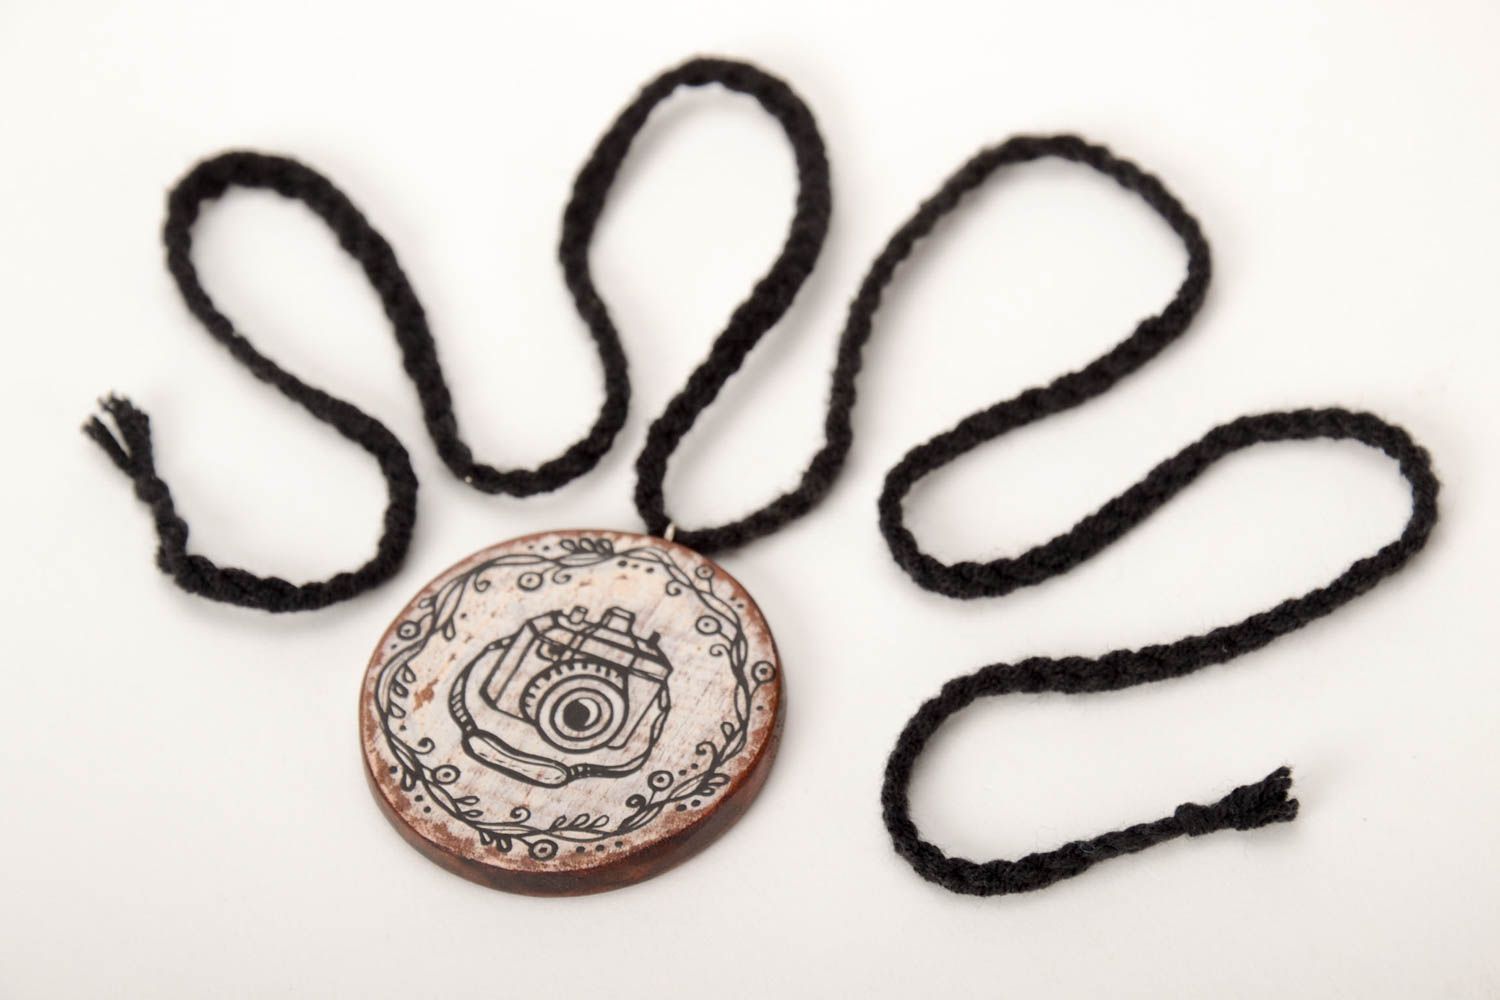 Handmade pendant wooden pendant designer accessory gift for girl unusual pendant photo 5